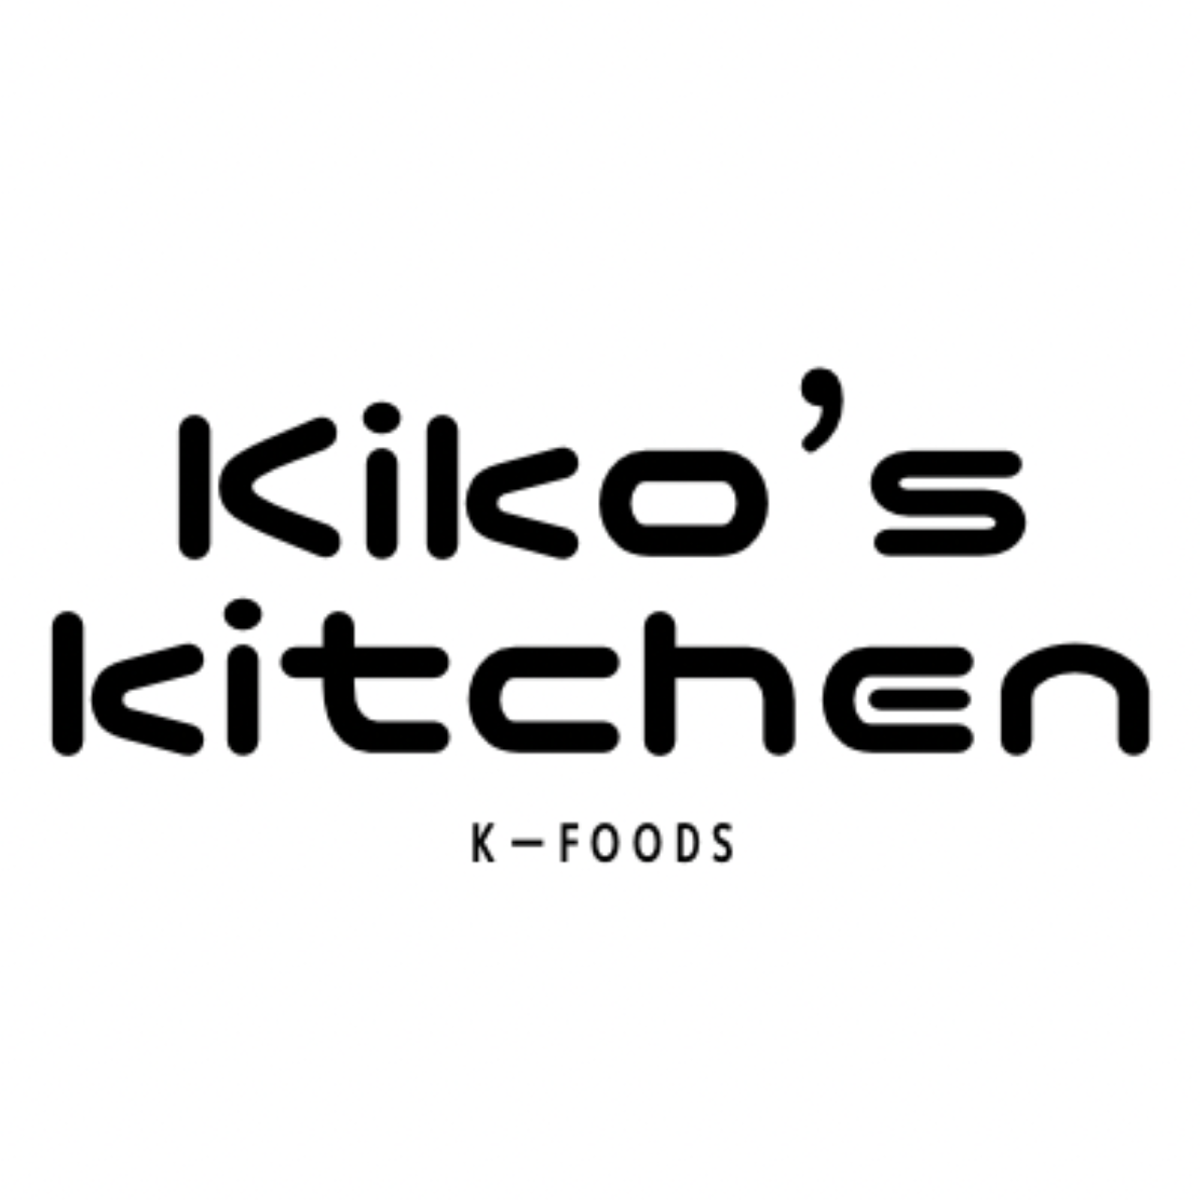 Kiko's kitchen（k-foods）